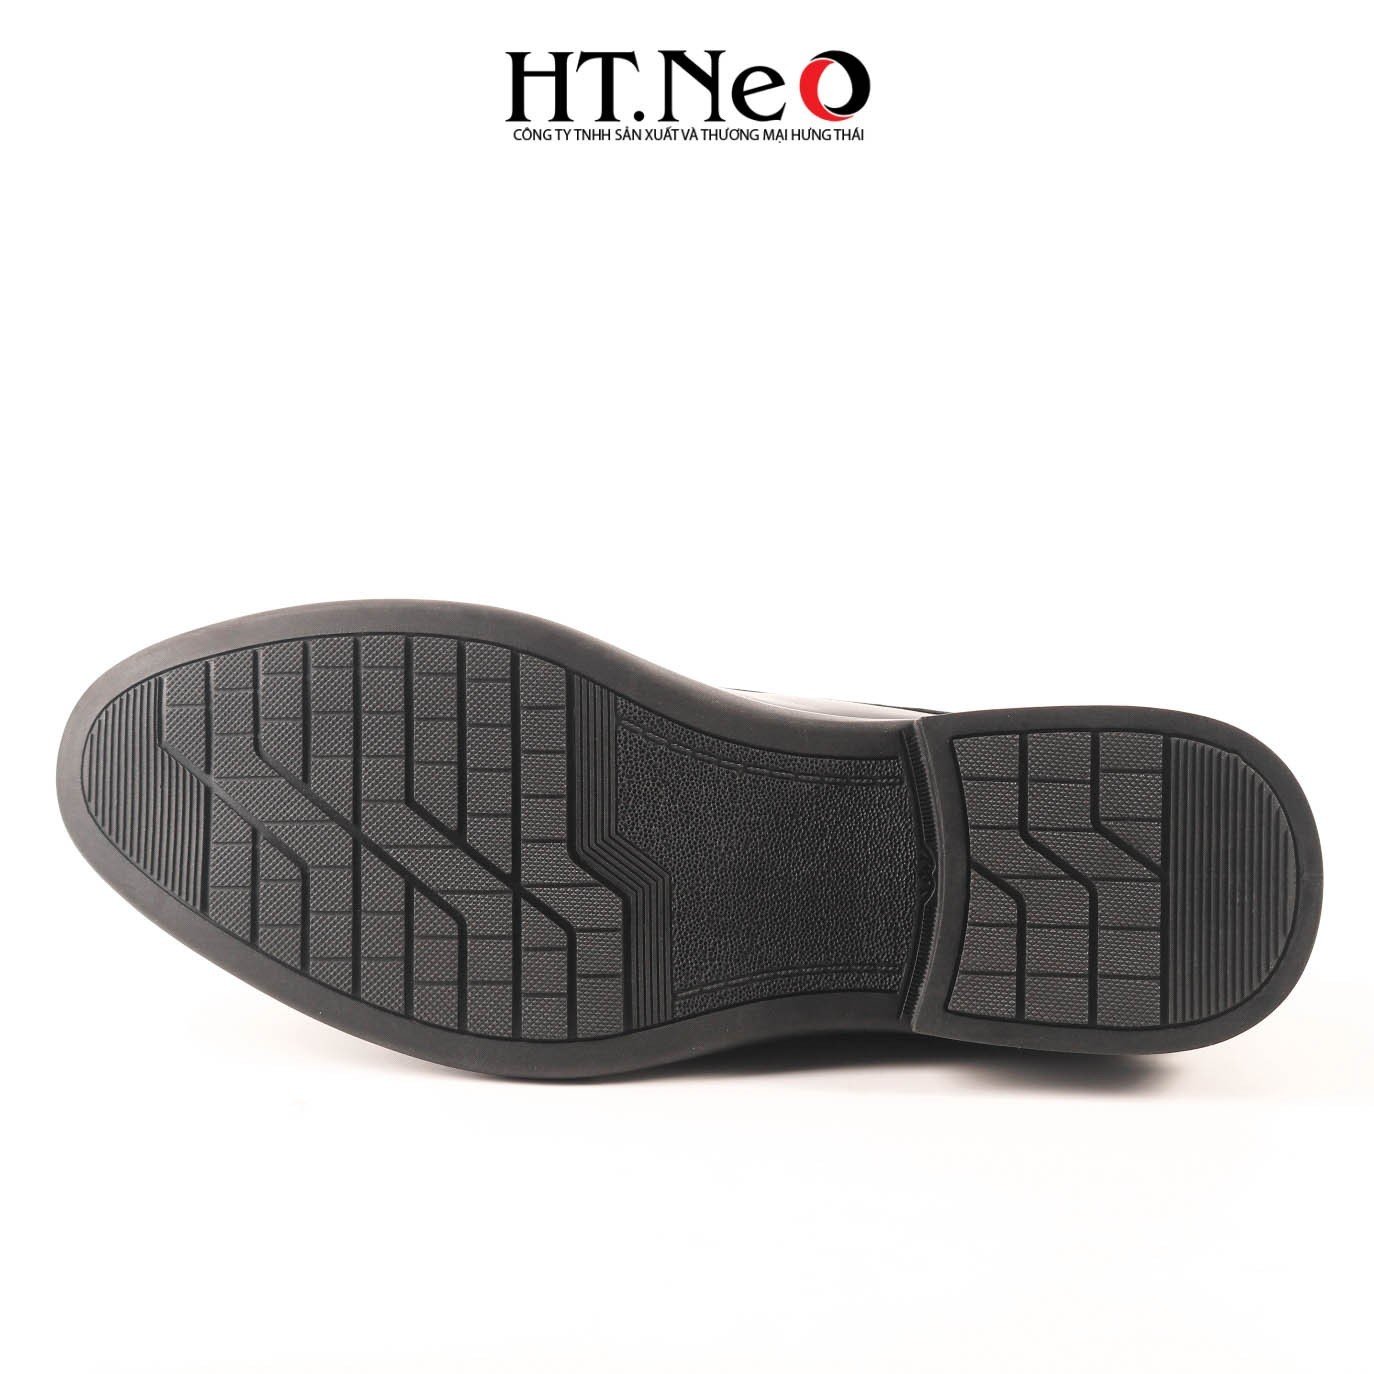 Giày tây, giày nam công sở buộc dây kẻ sọc, thiết kế đơn giản, tinh tế sang trọng, chất liệu da cao cấp đi êm chân thoải mái GT196